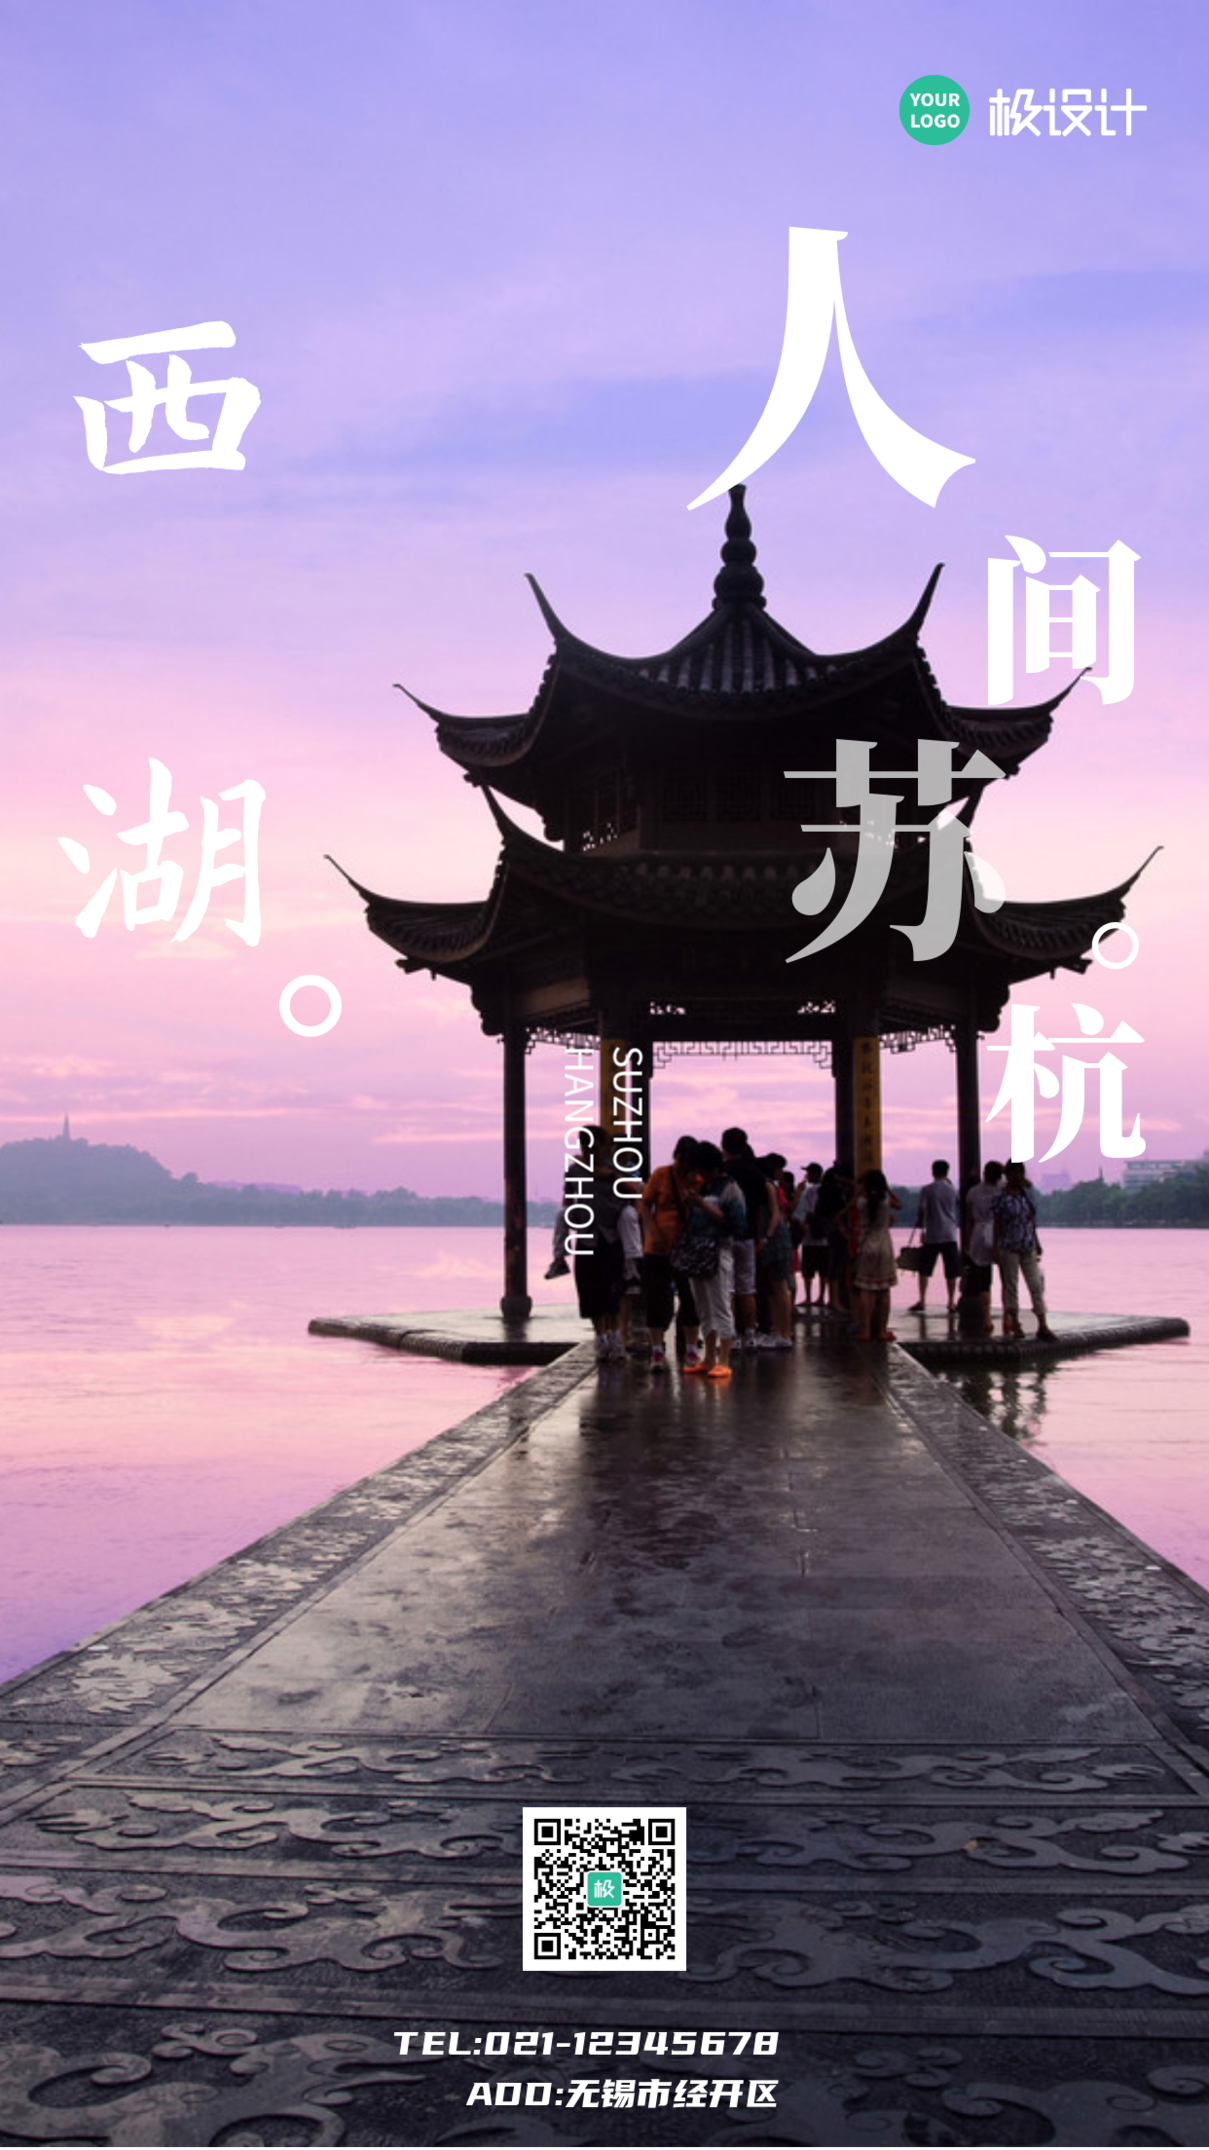 杭州西湖旅游宣传简约大气手机海报